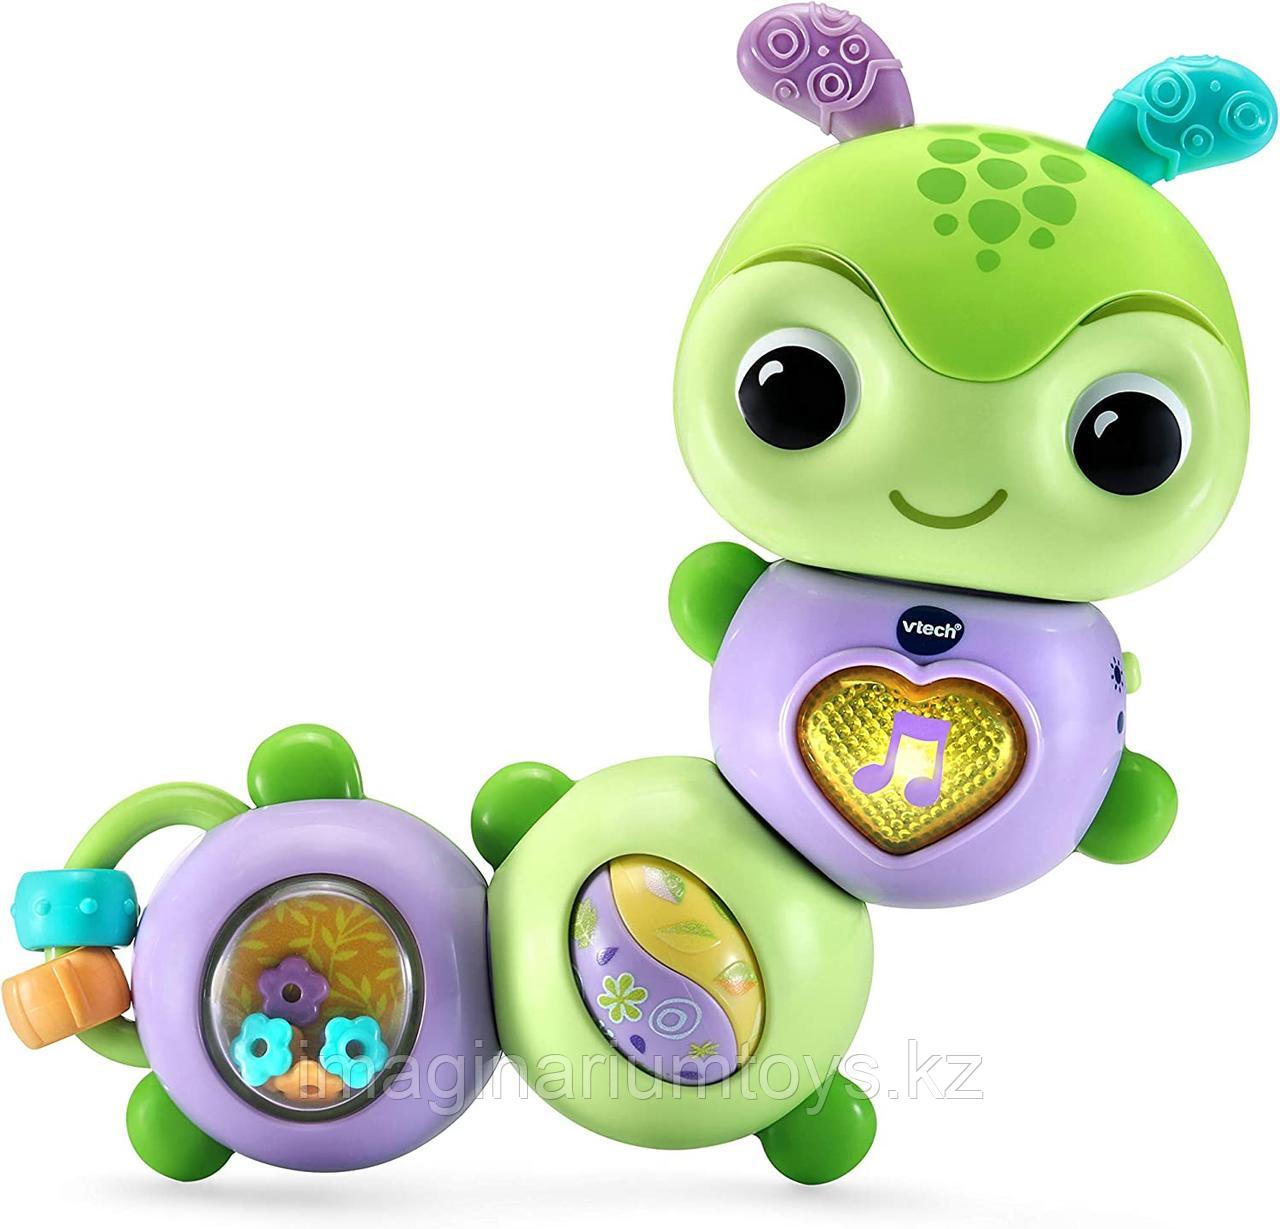 Развивающая игрушка для малышей «Зеленая гусеница» Vtech, фото 1